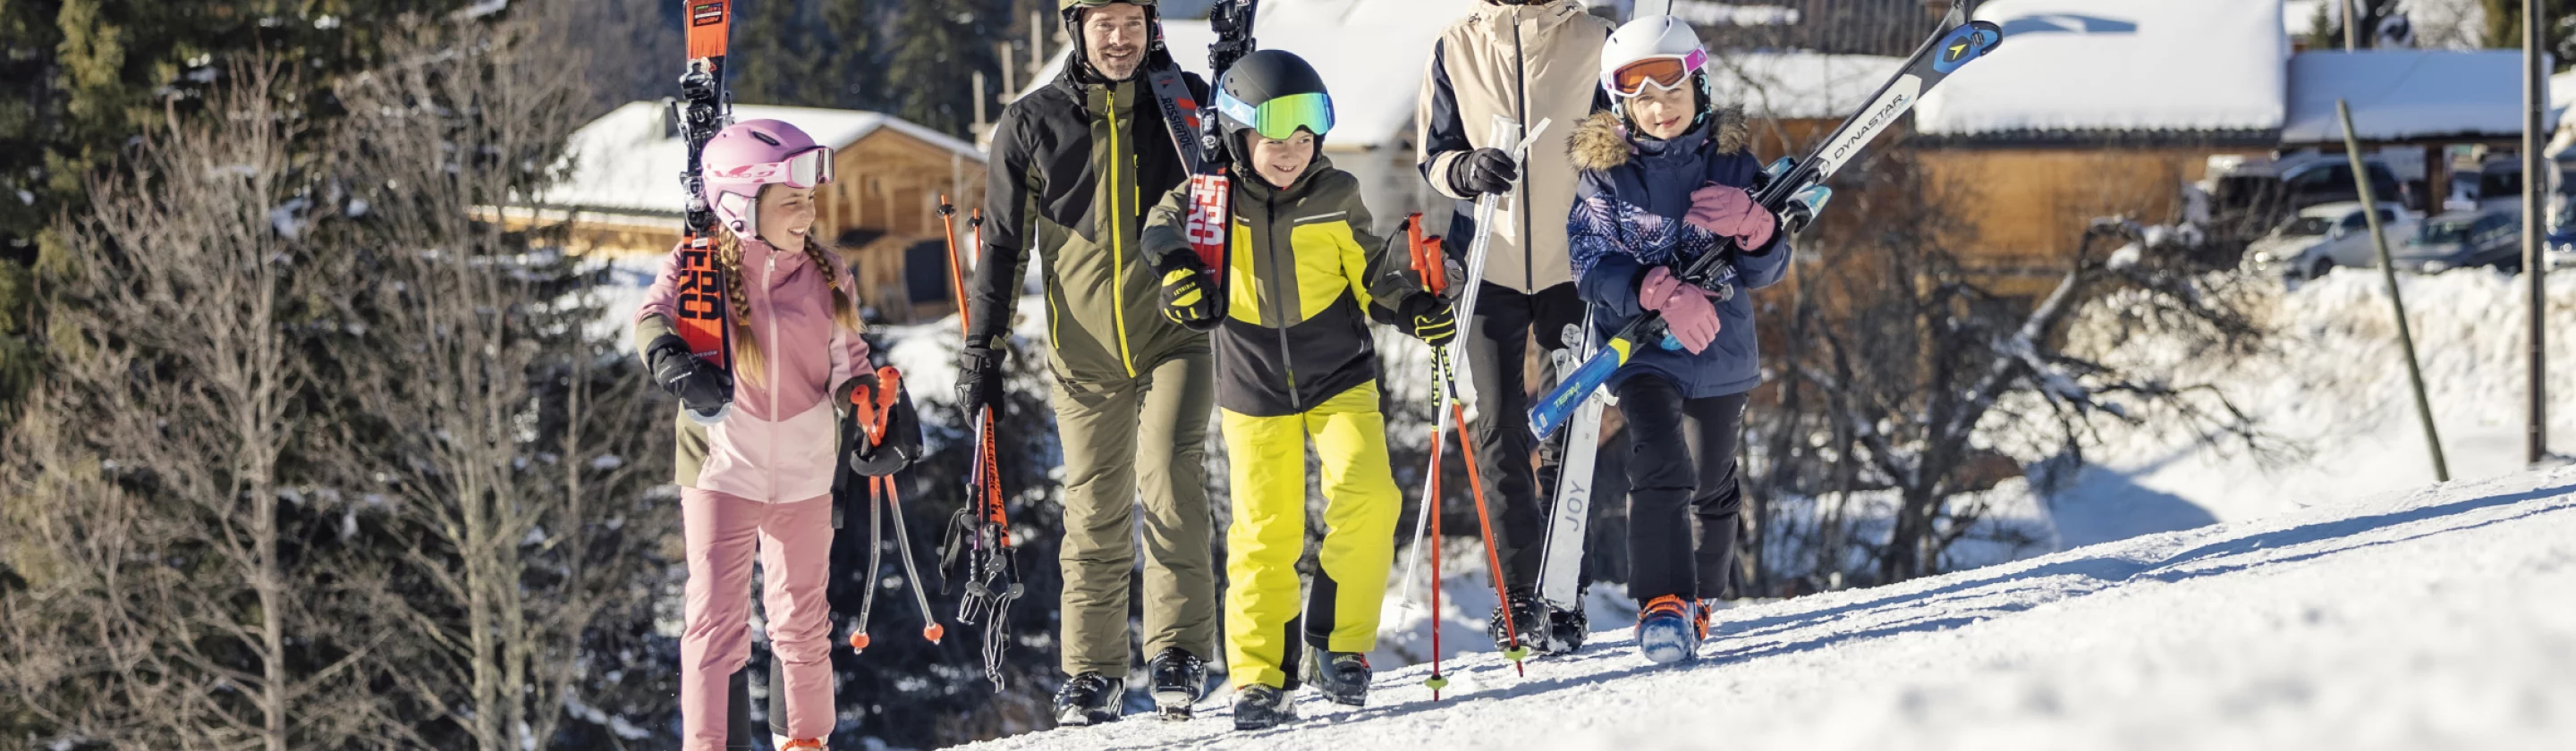 Comment voyager avec son matériel de ski ou de snowboard ?